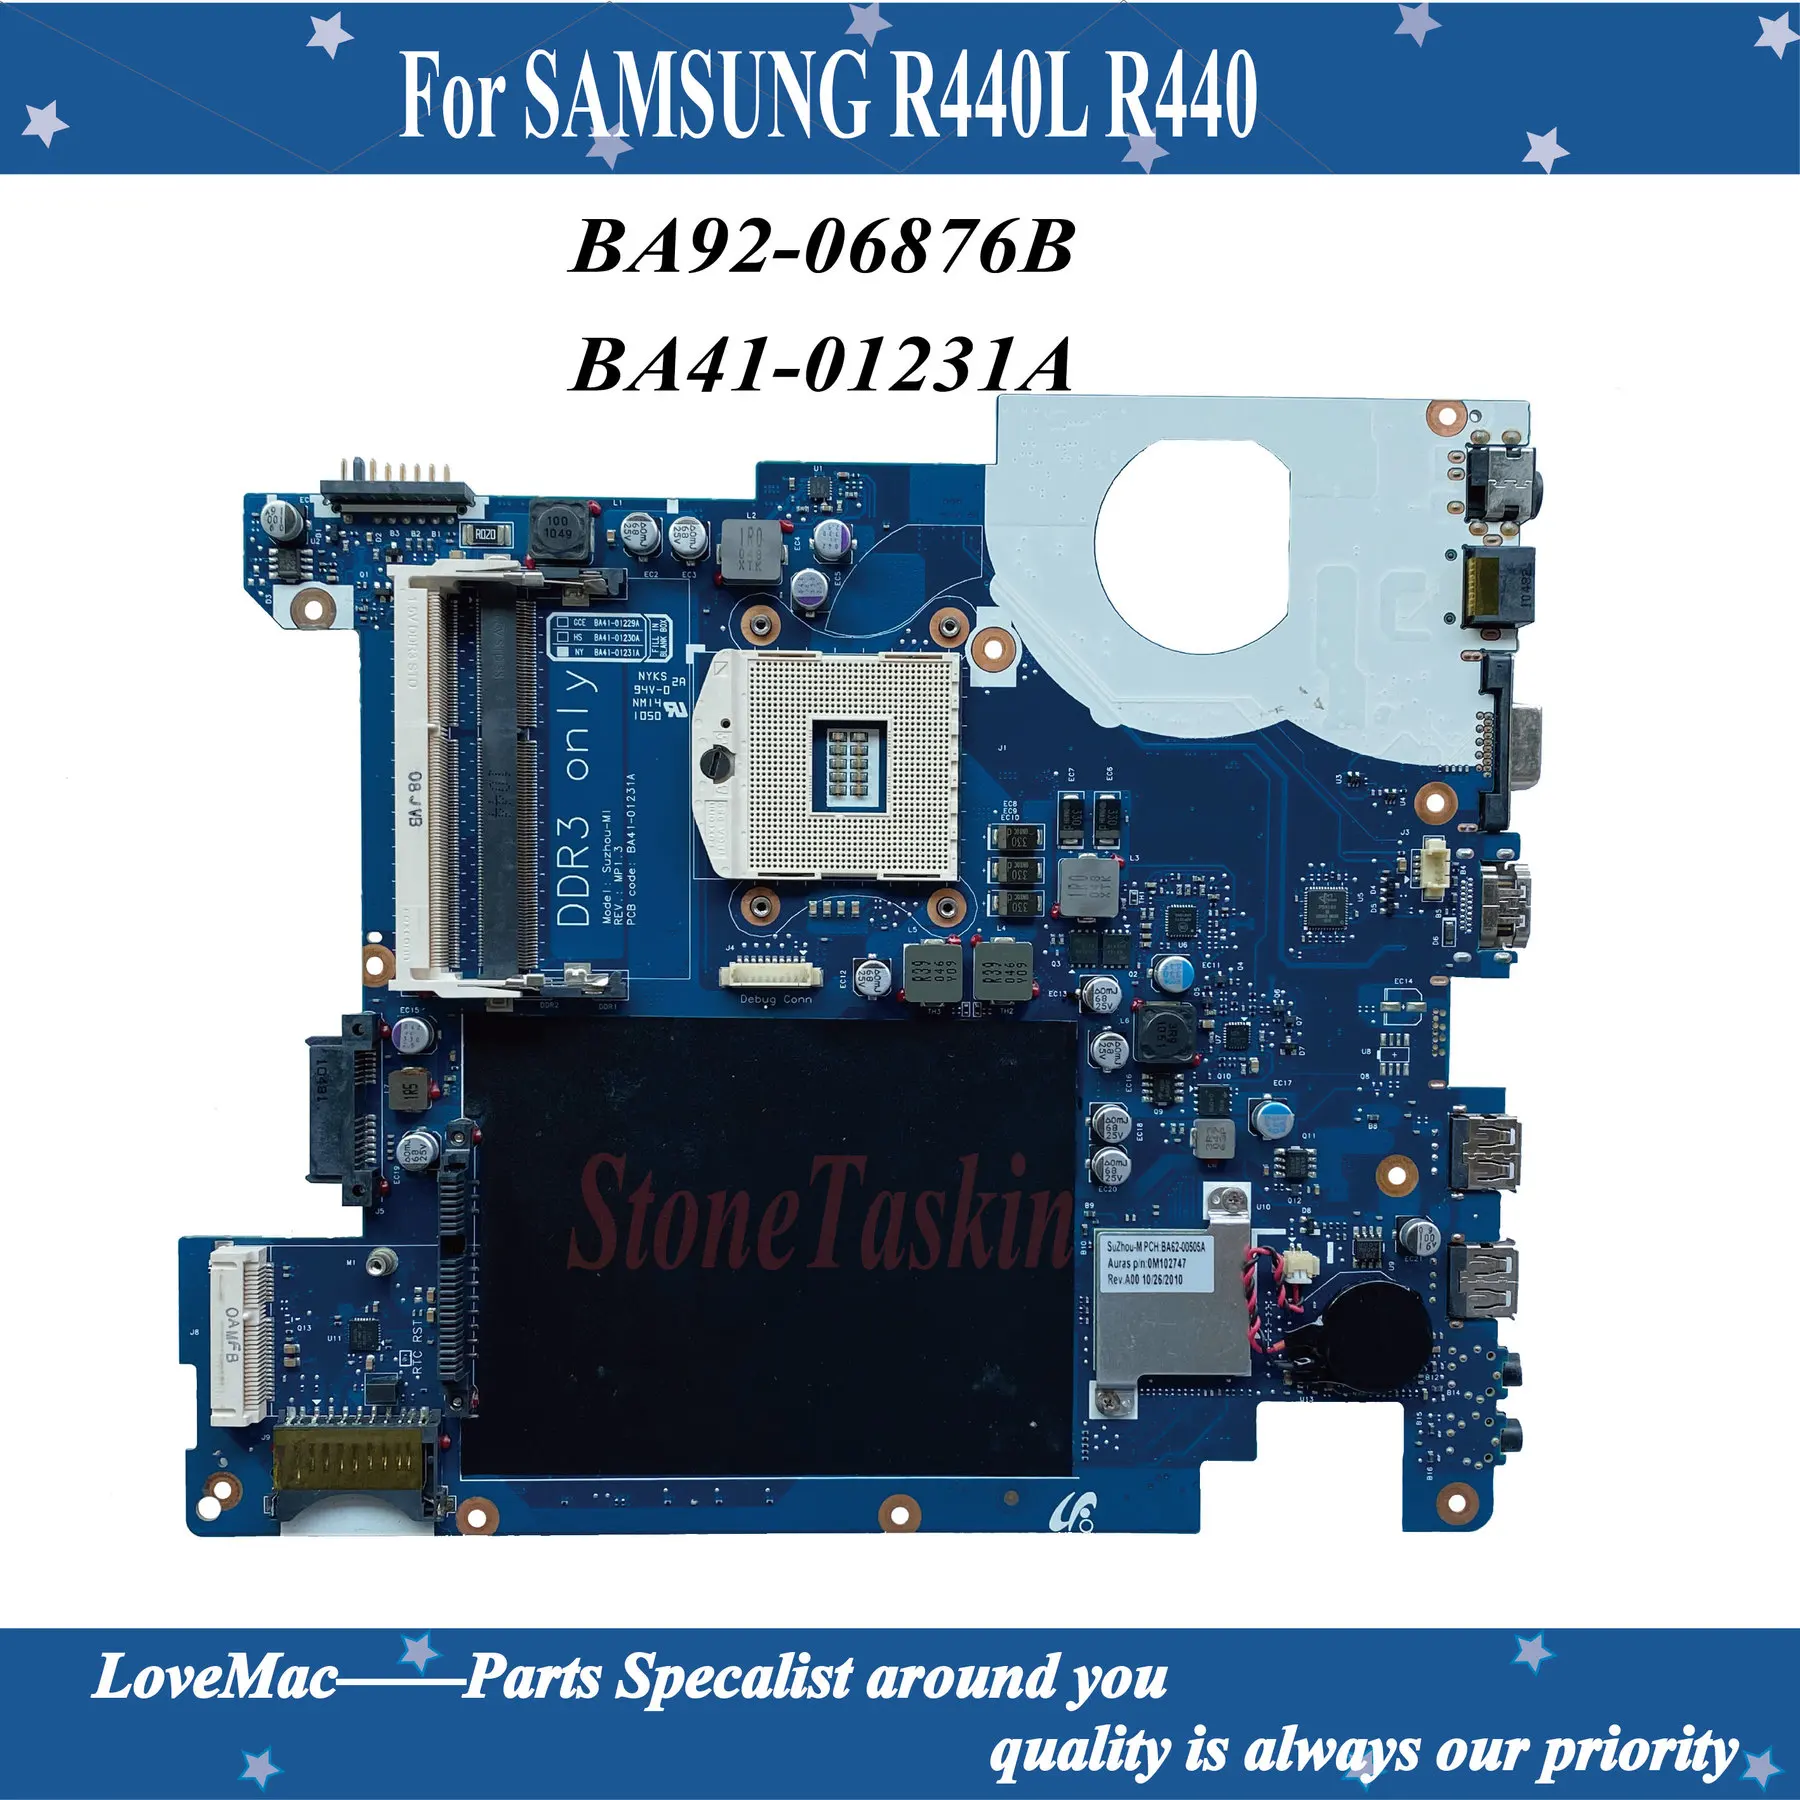   BA92-06876B     SAMSUNG R440L R440   BA41-01231A DDR3 PGA-989  100% 